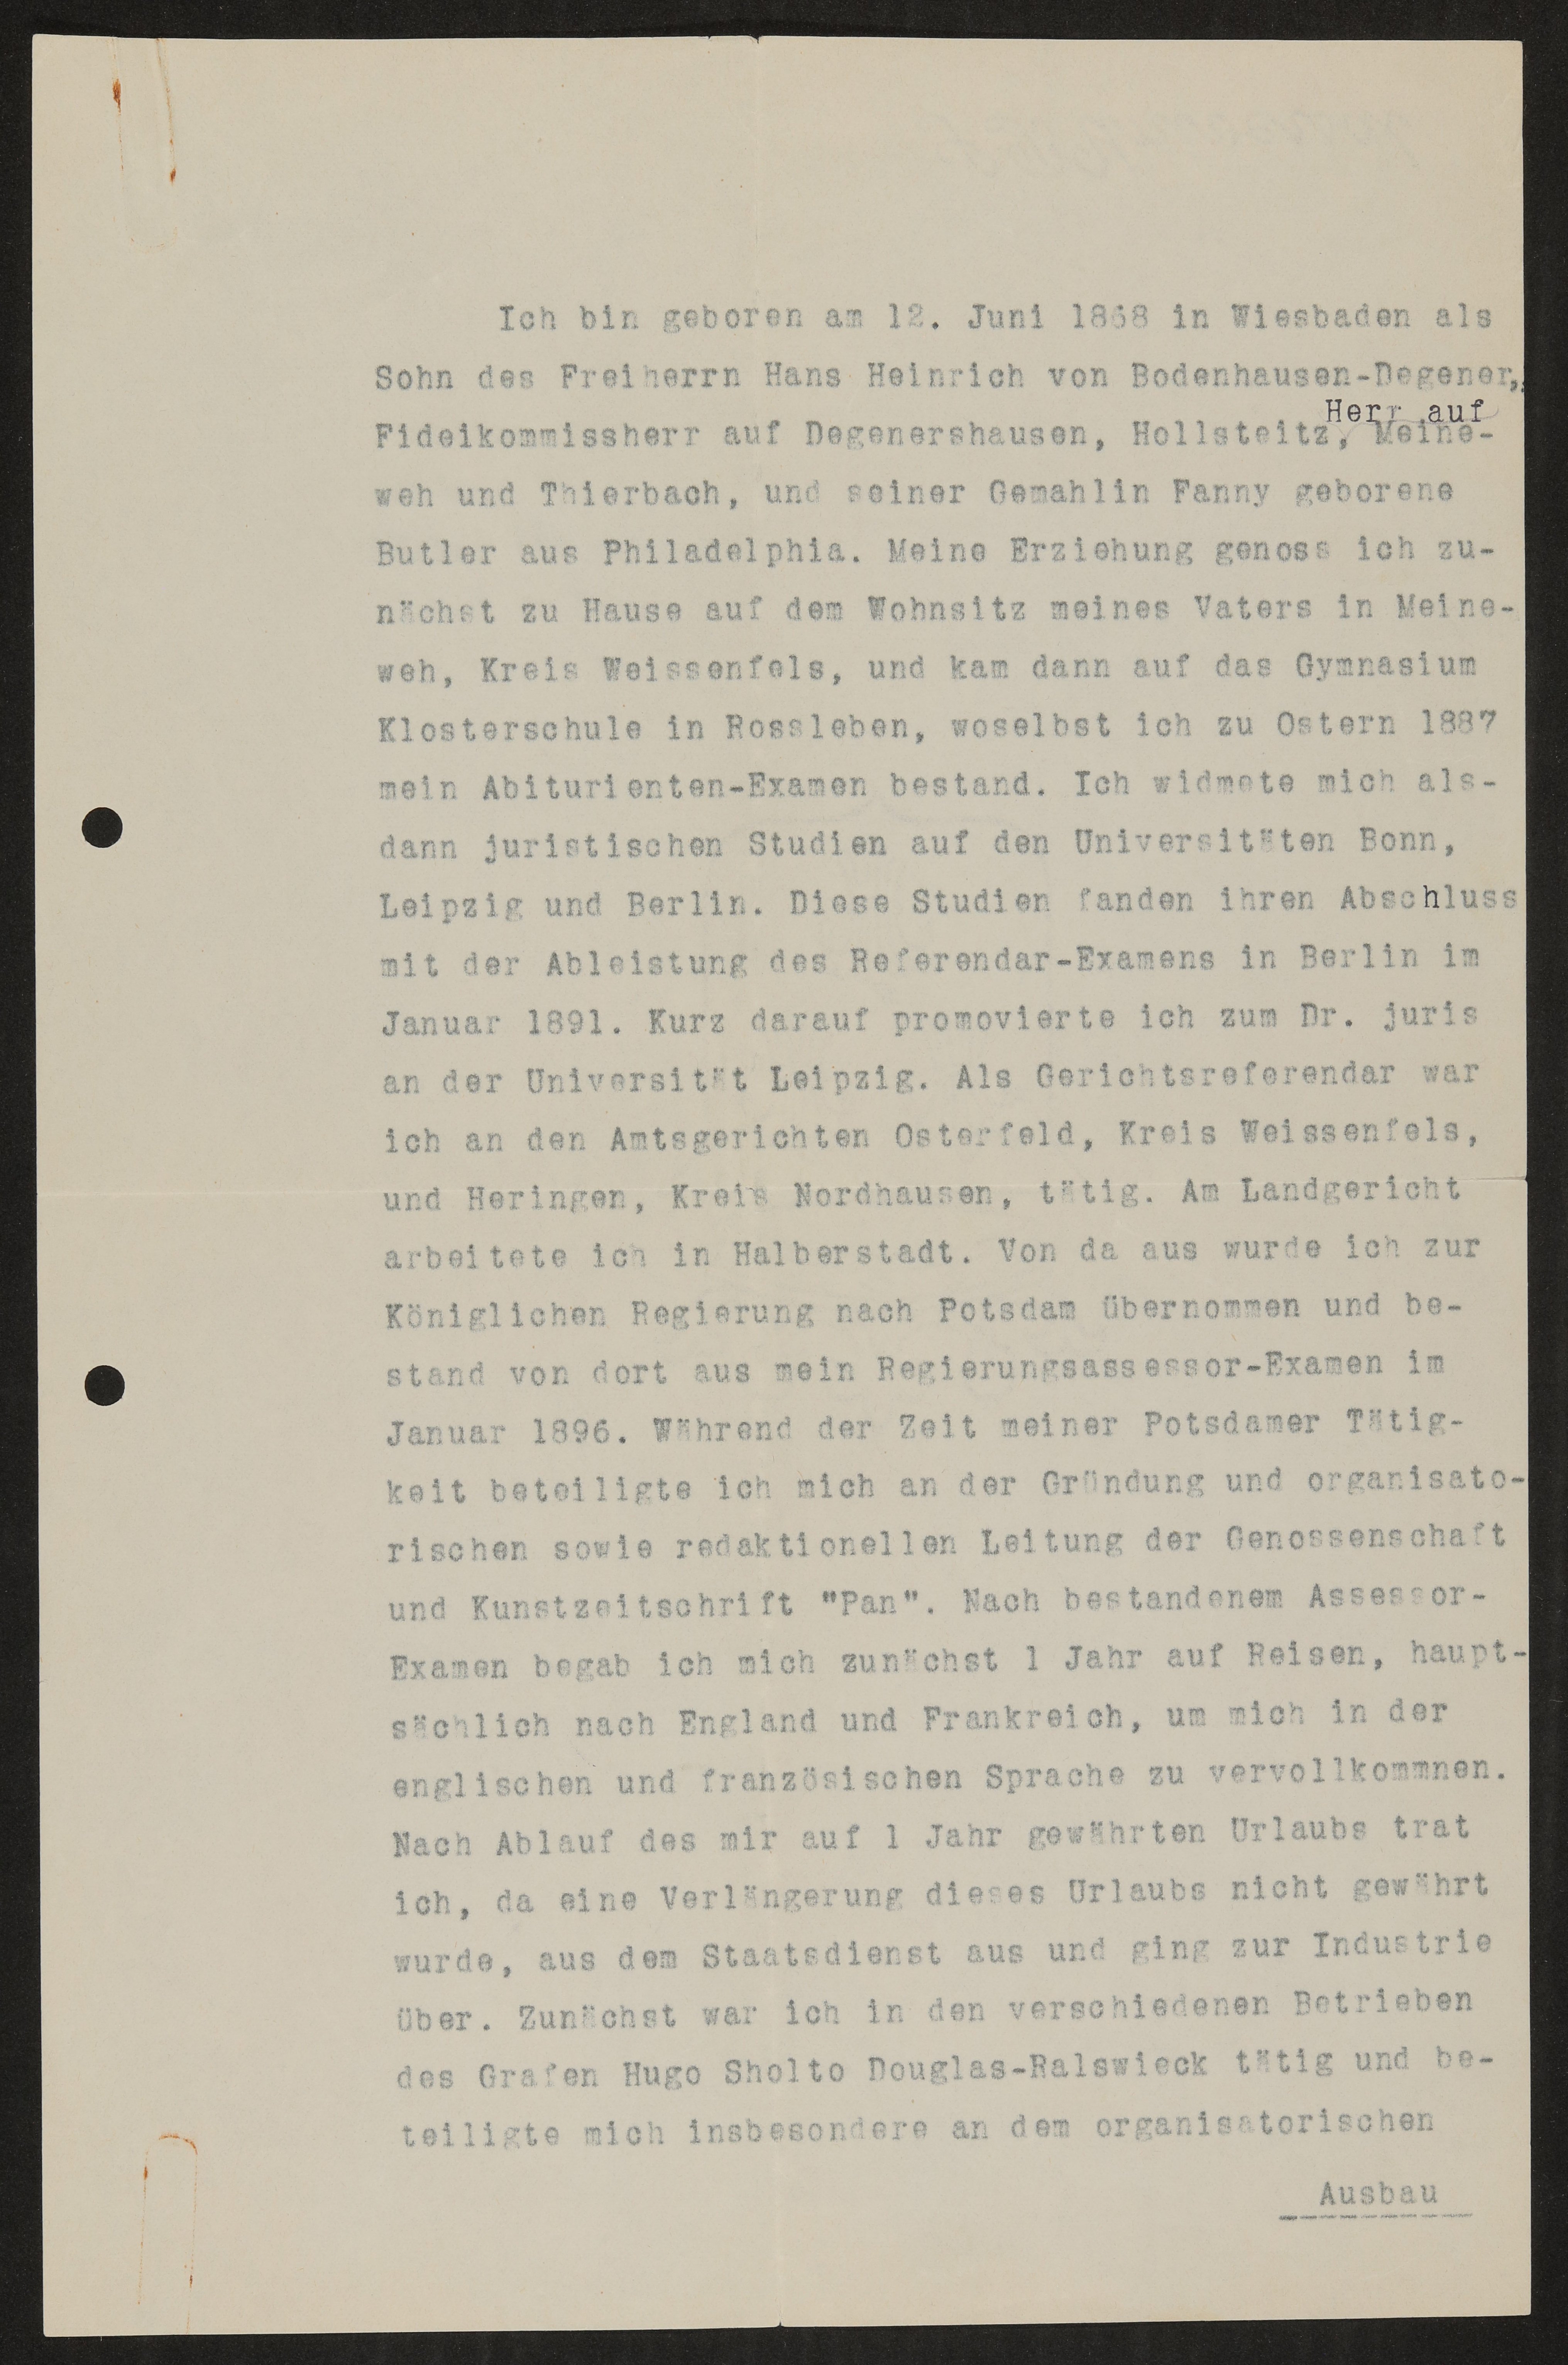 H56_Hs-27552_002 (Freies Deutsches Hochstift / Frankfurter Goethe-Museum Public Domain Mark)